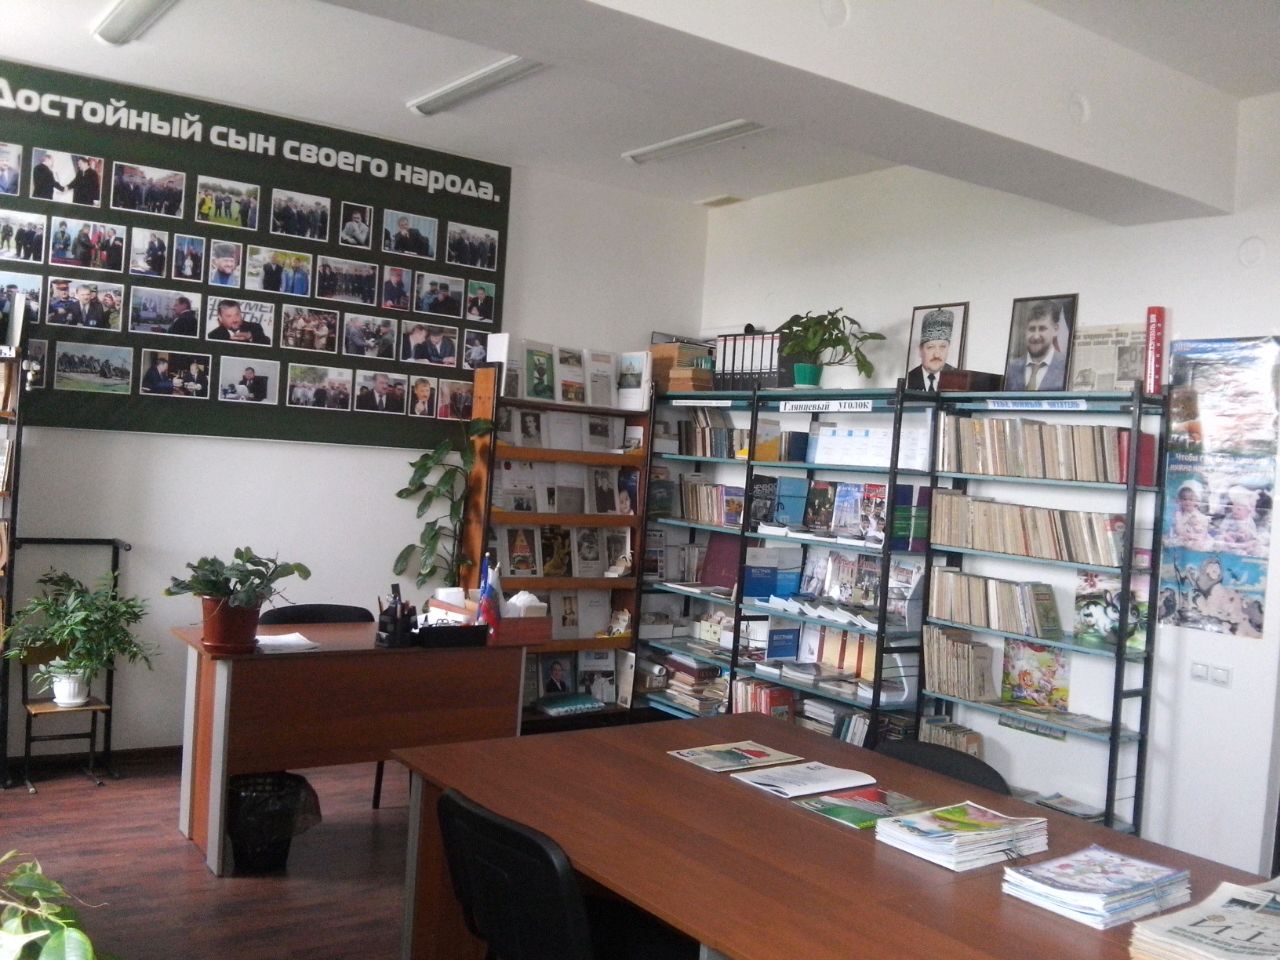 Алхазуровская сельская библиотека